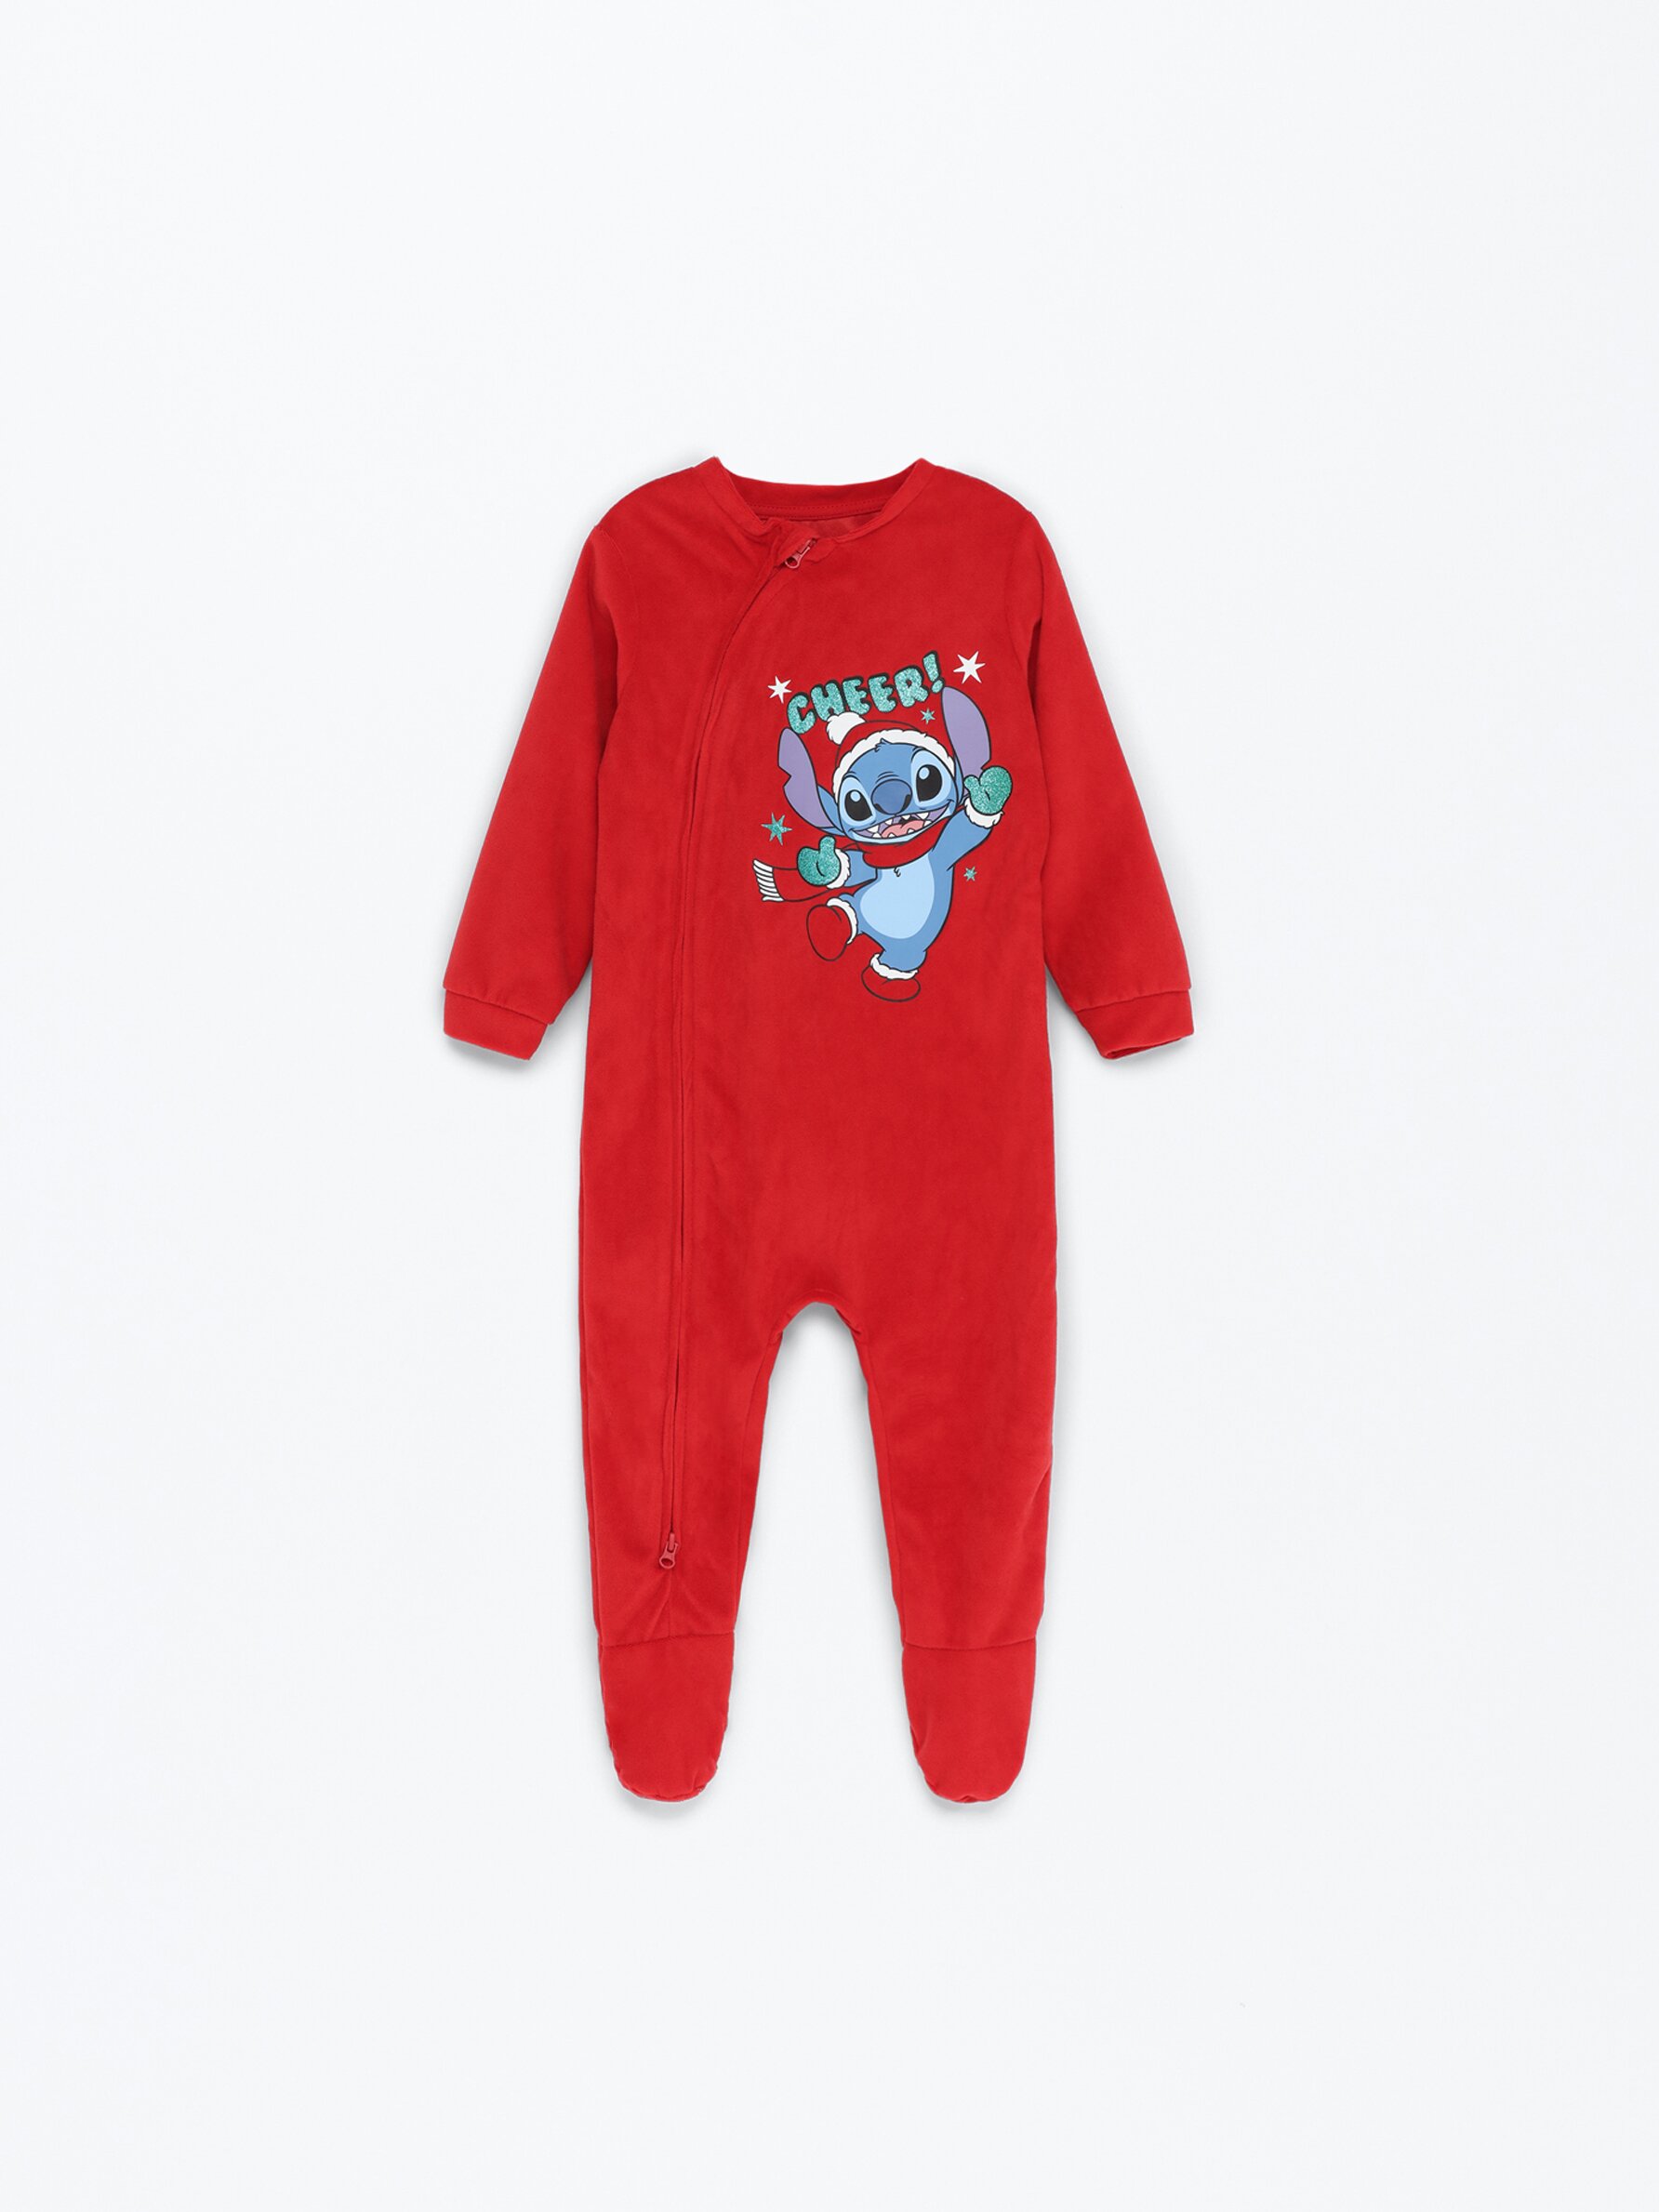 Pijama completo Stitch